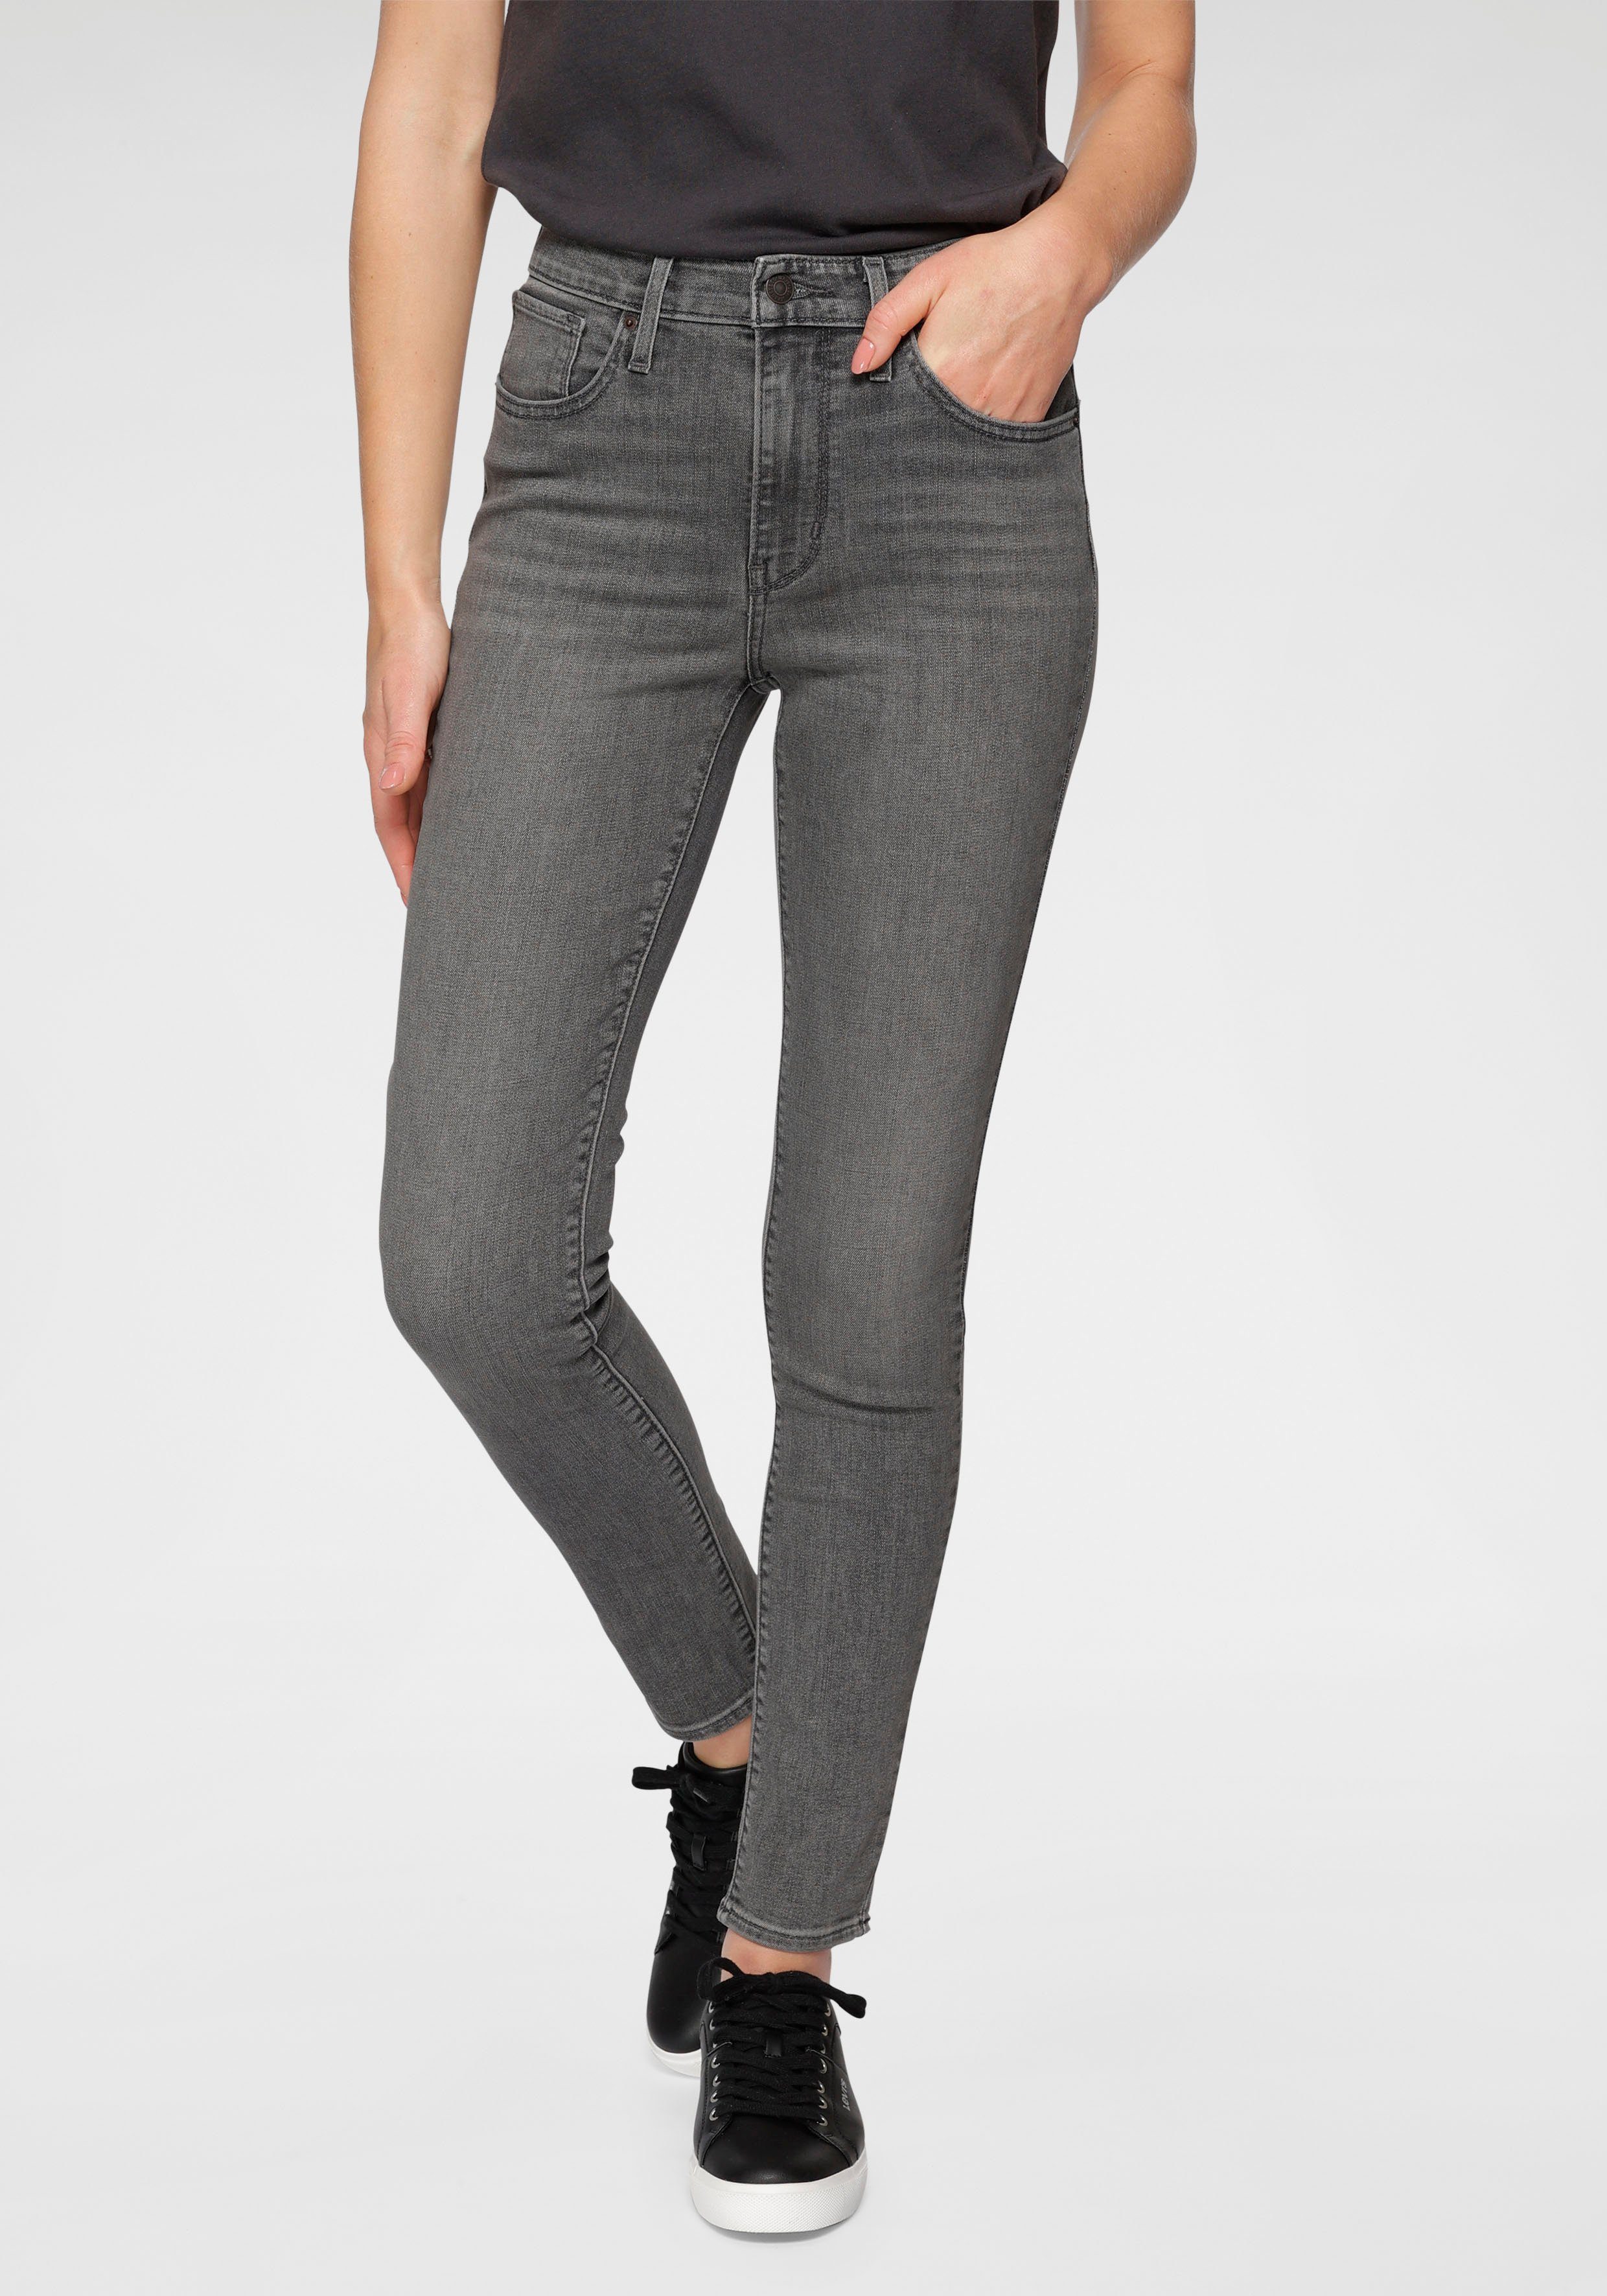 Graue Jeans online kaufen | OTTO